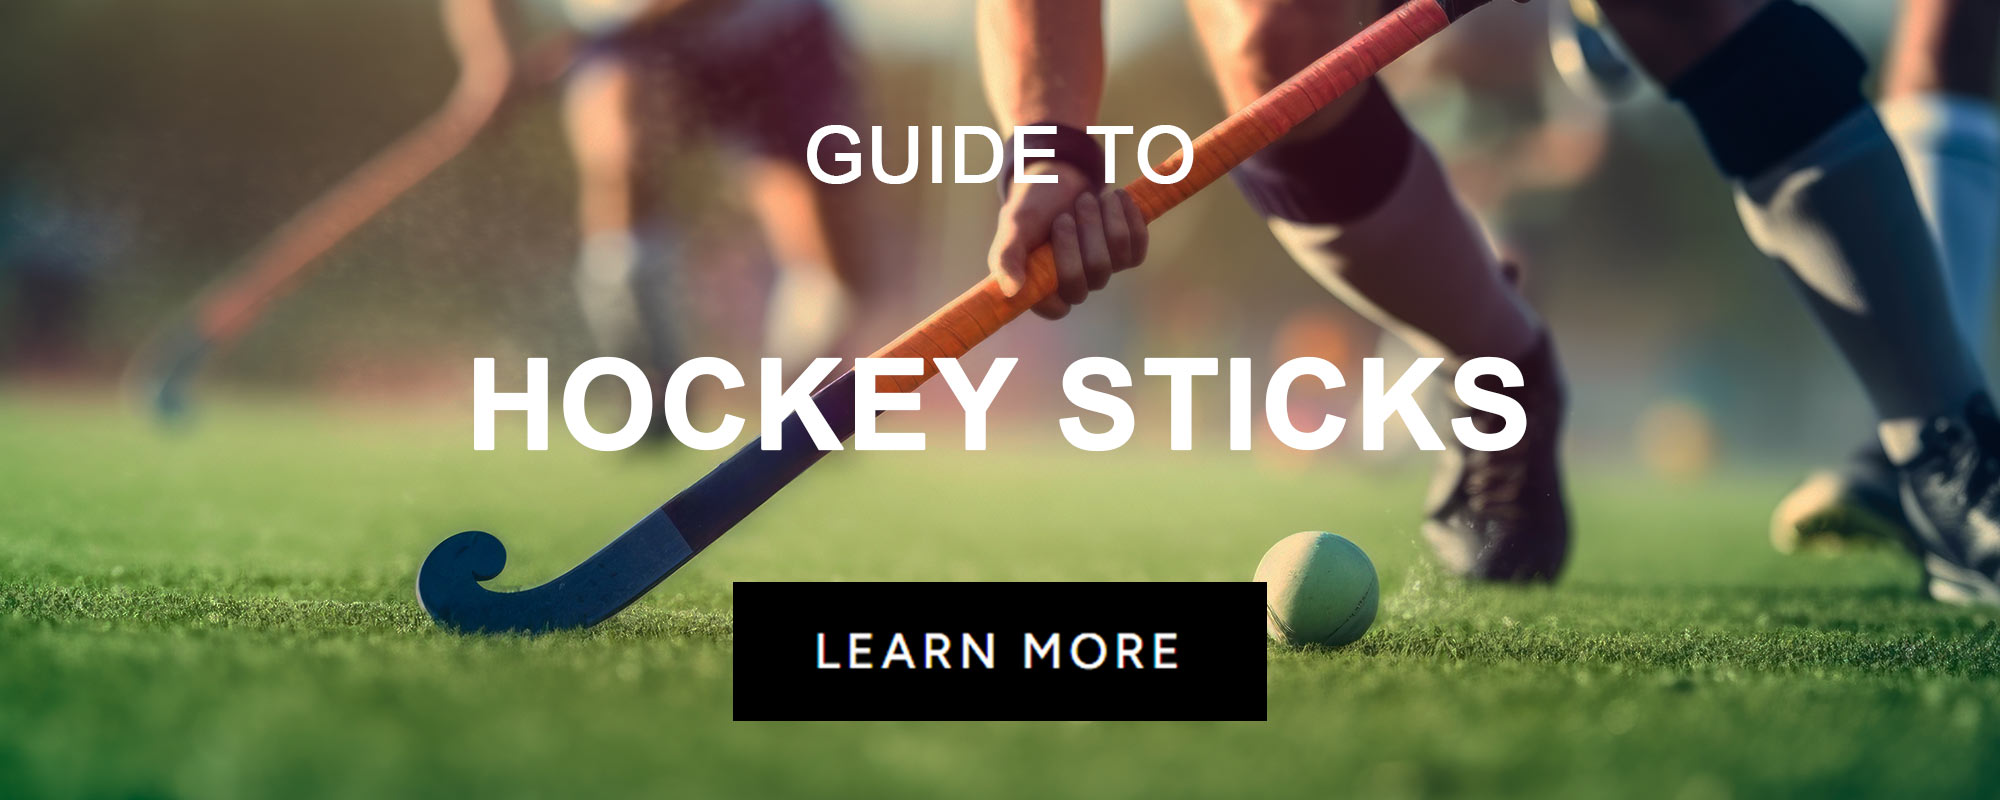 GUIDES_SPORT_HockeySticks-V2.jpg